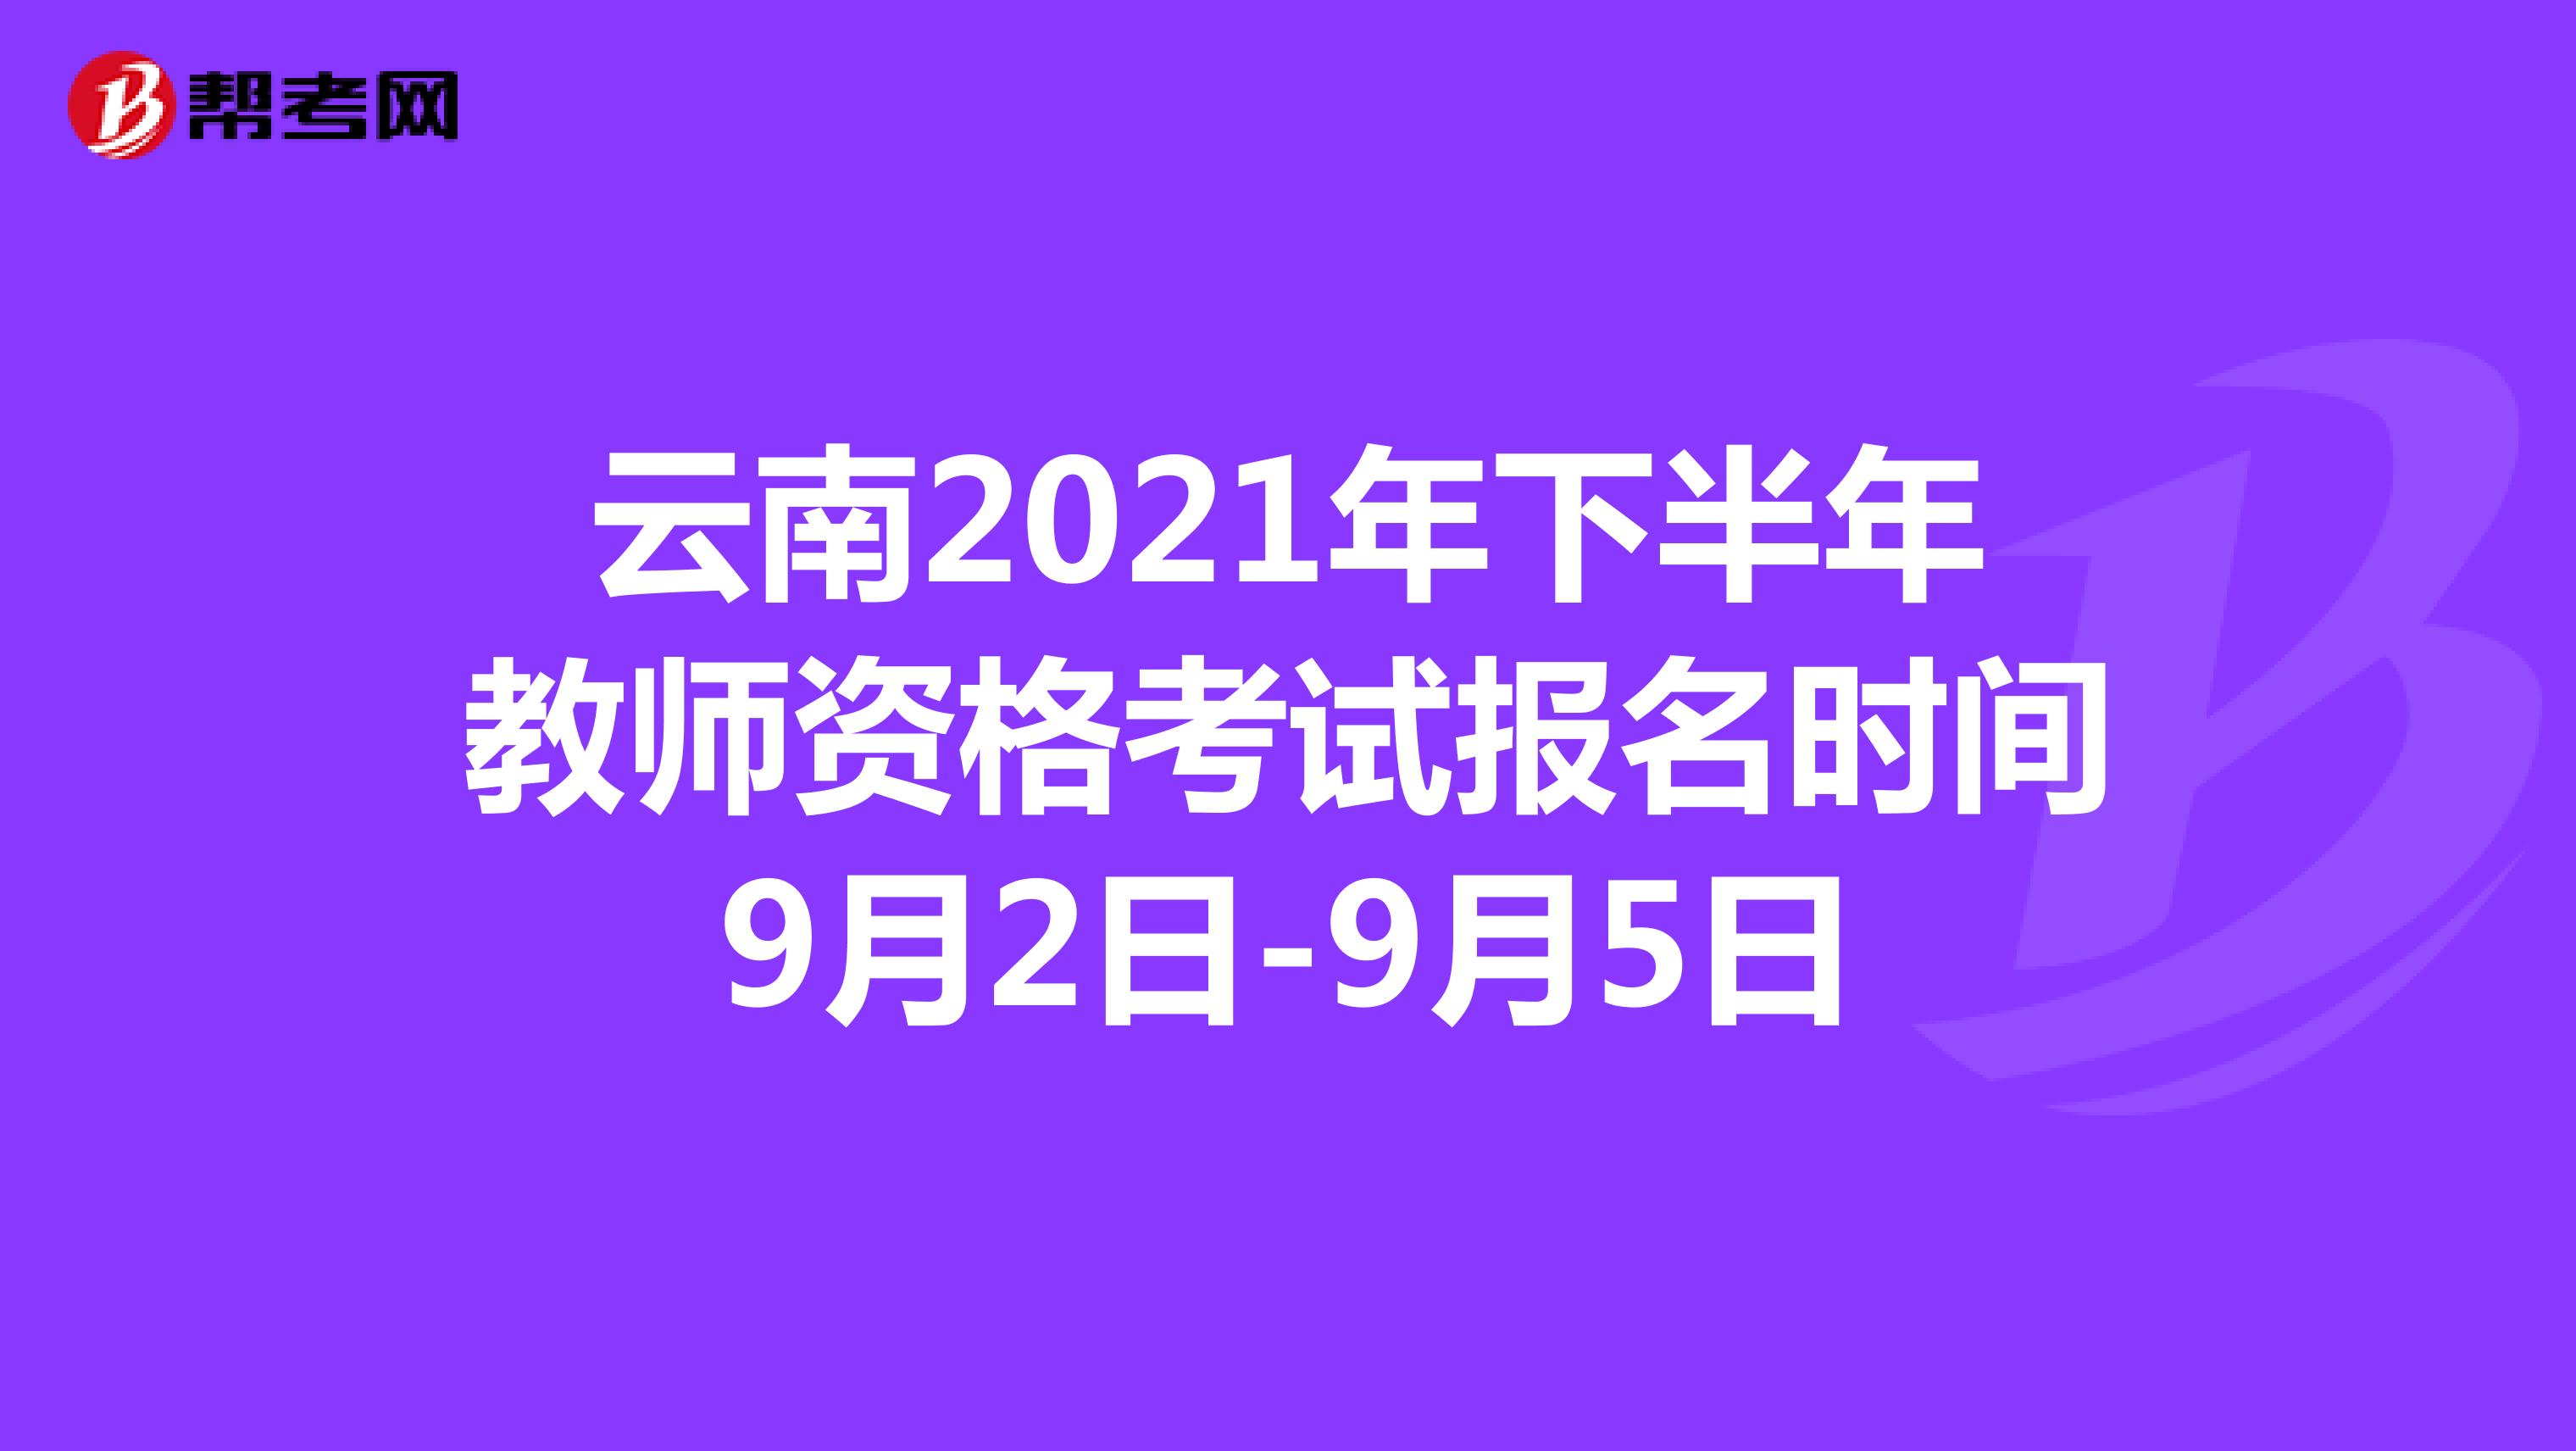 云南2021年下半年教师资格考试报名时间9月2日-9月5日